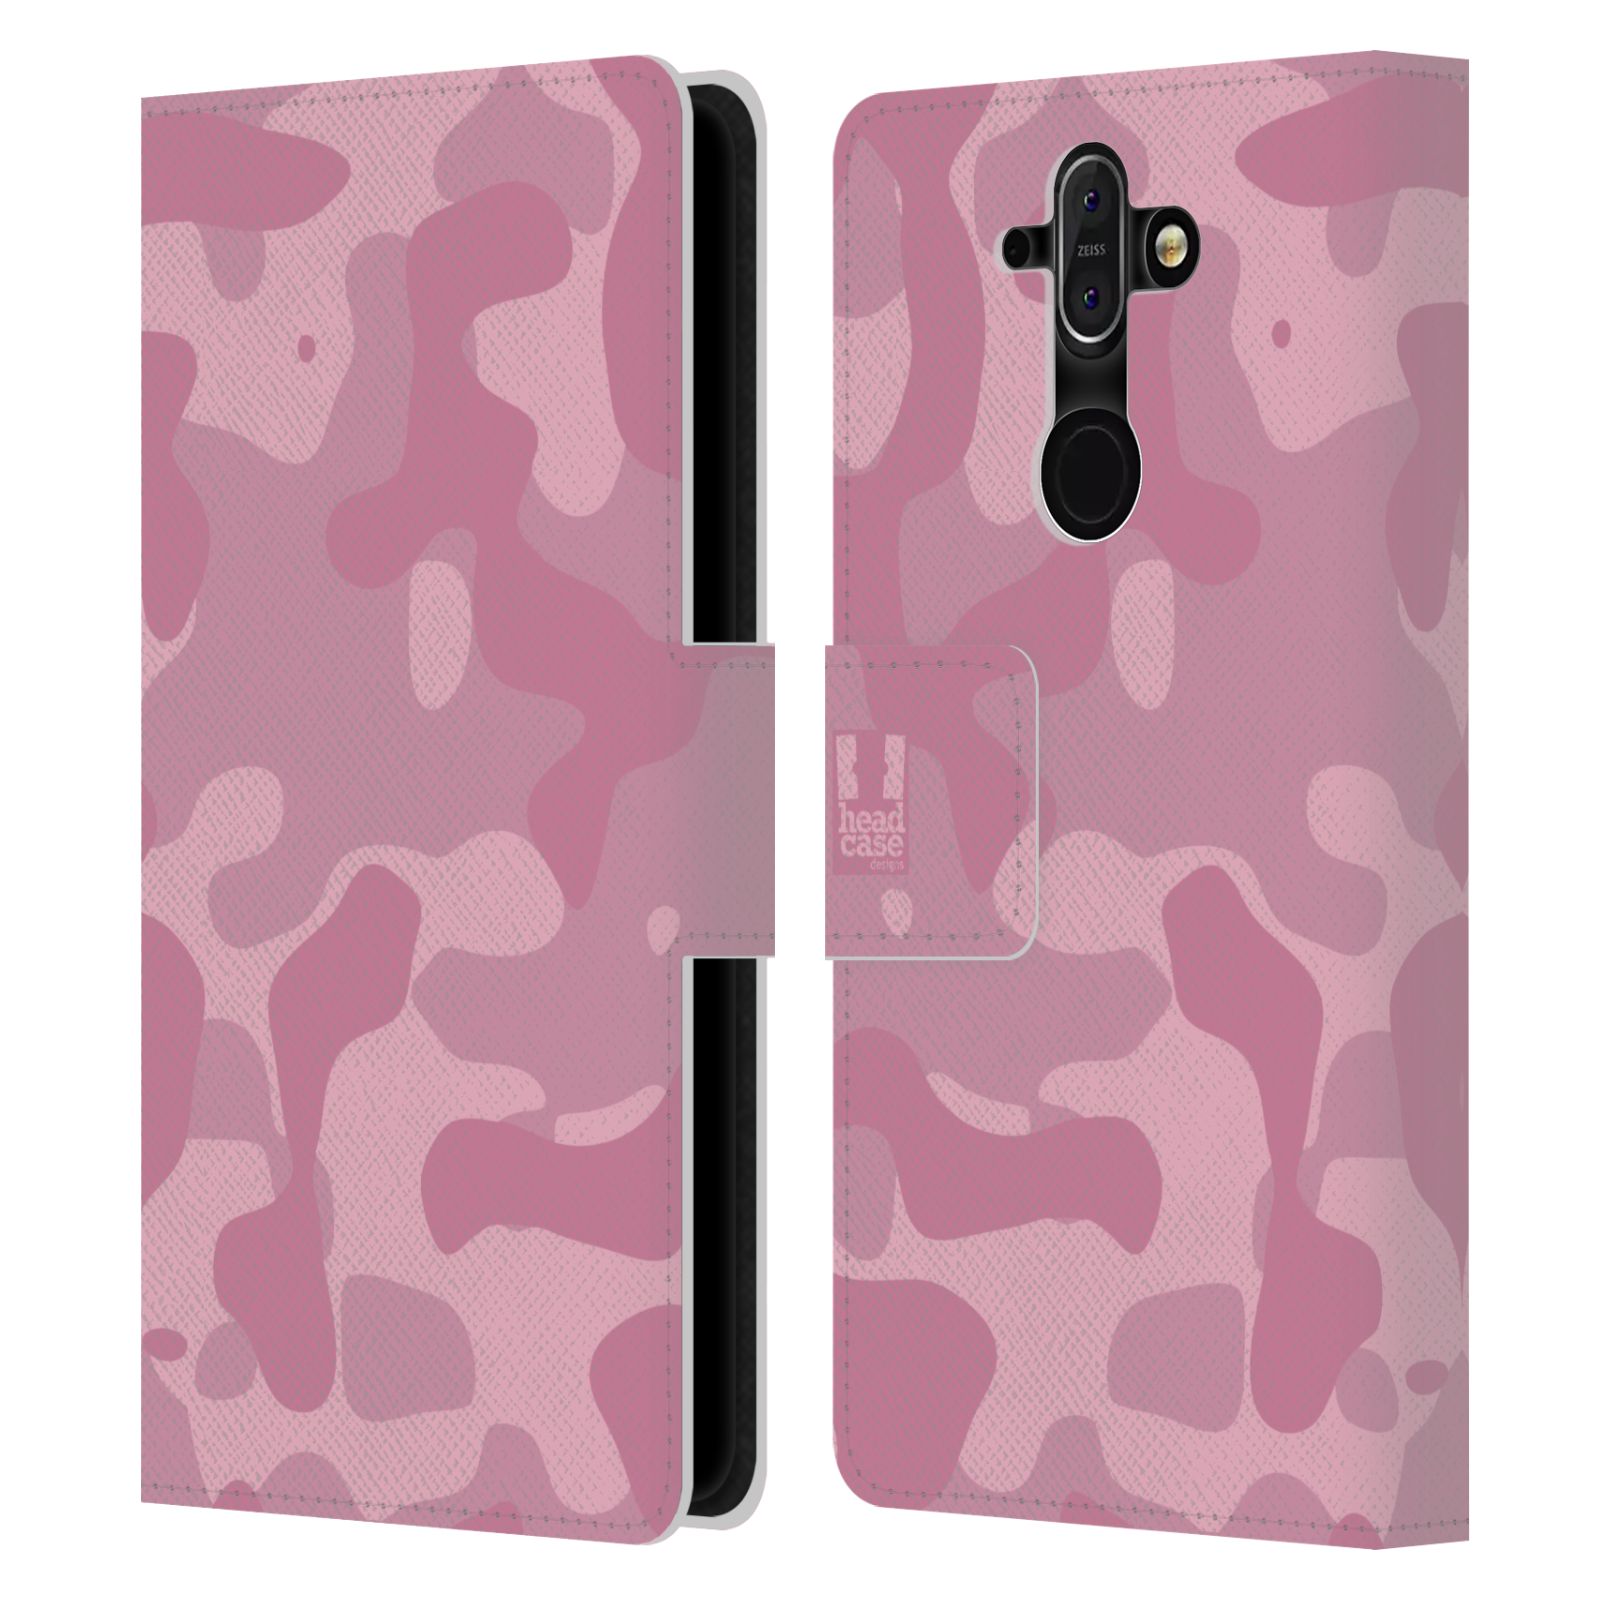 HEAD CASE Flipové pouzdro pro mobil Nokia 8 SIROCCO lehká barevná kamufláž růžová